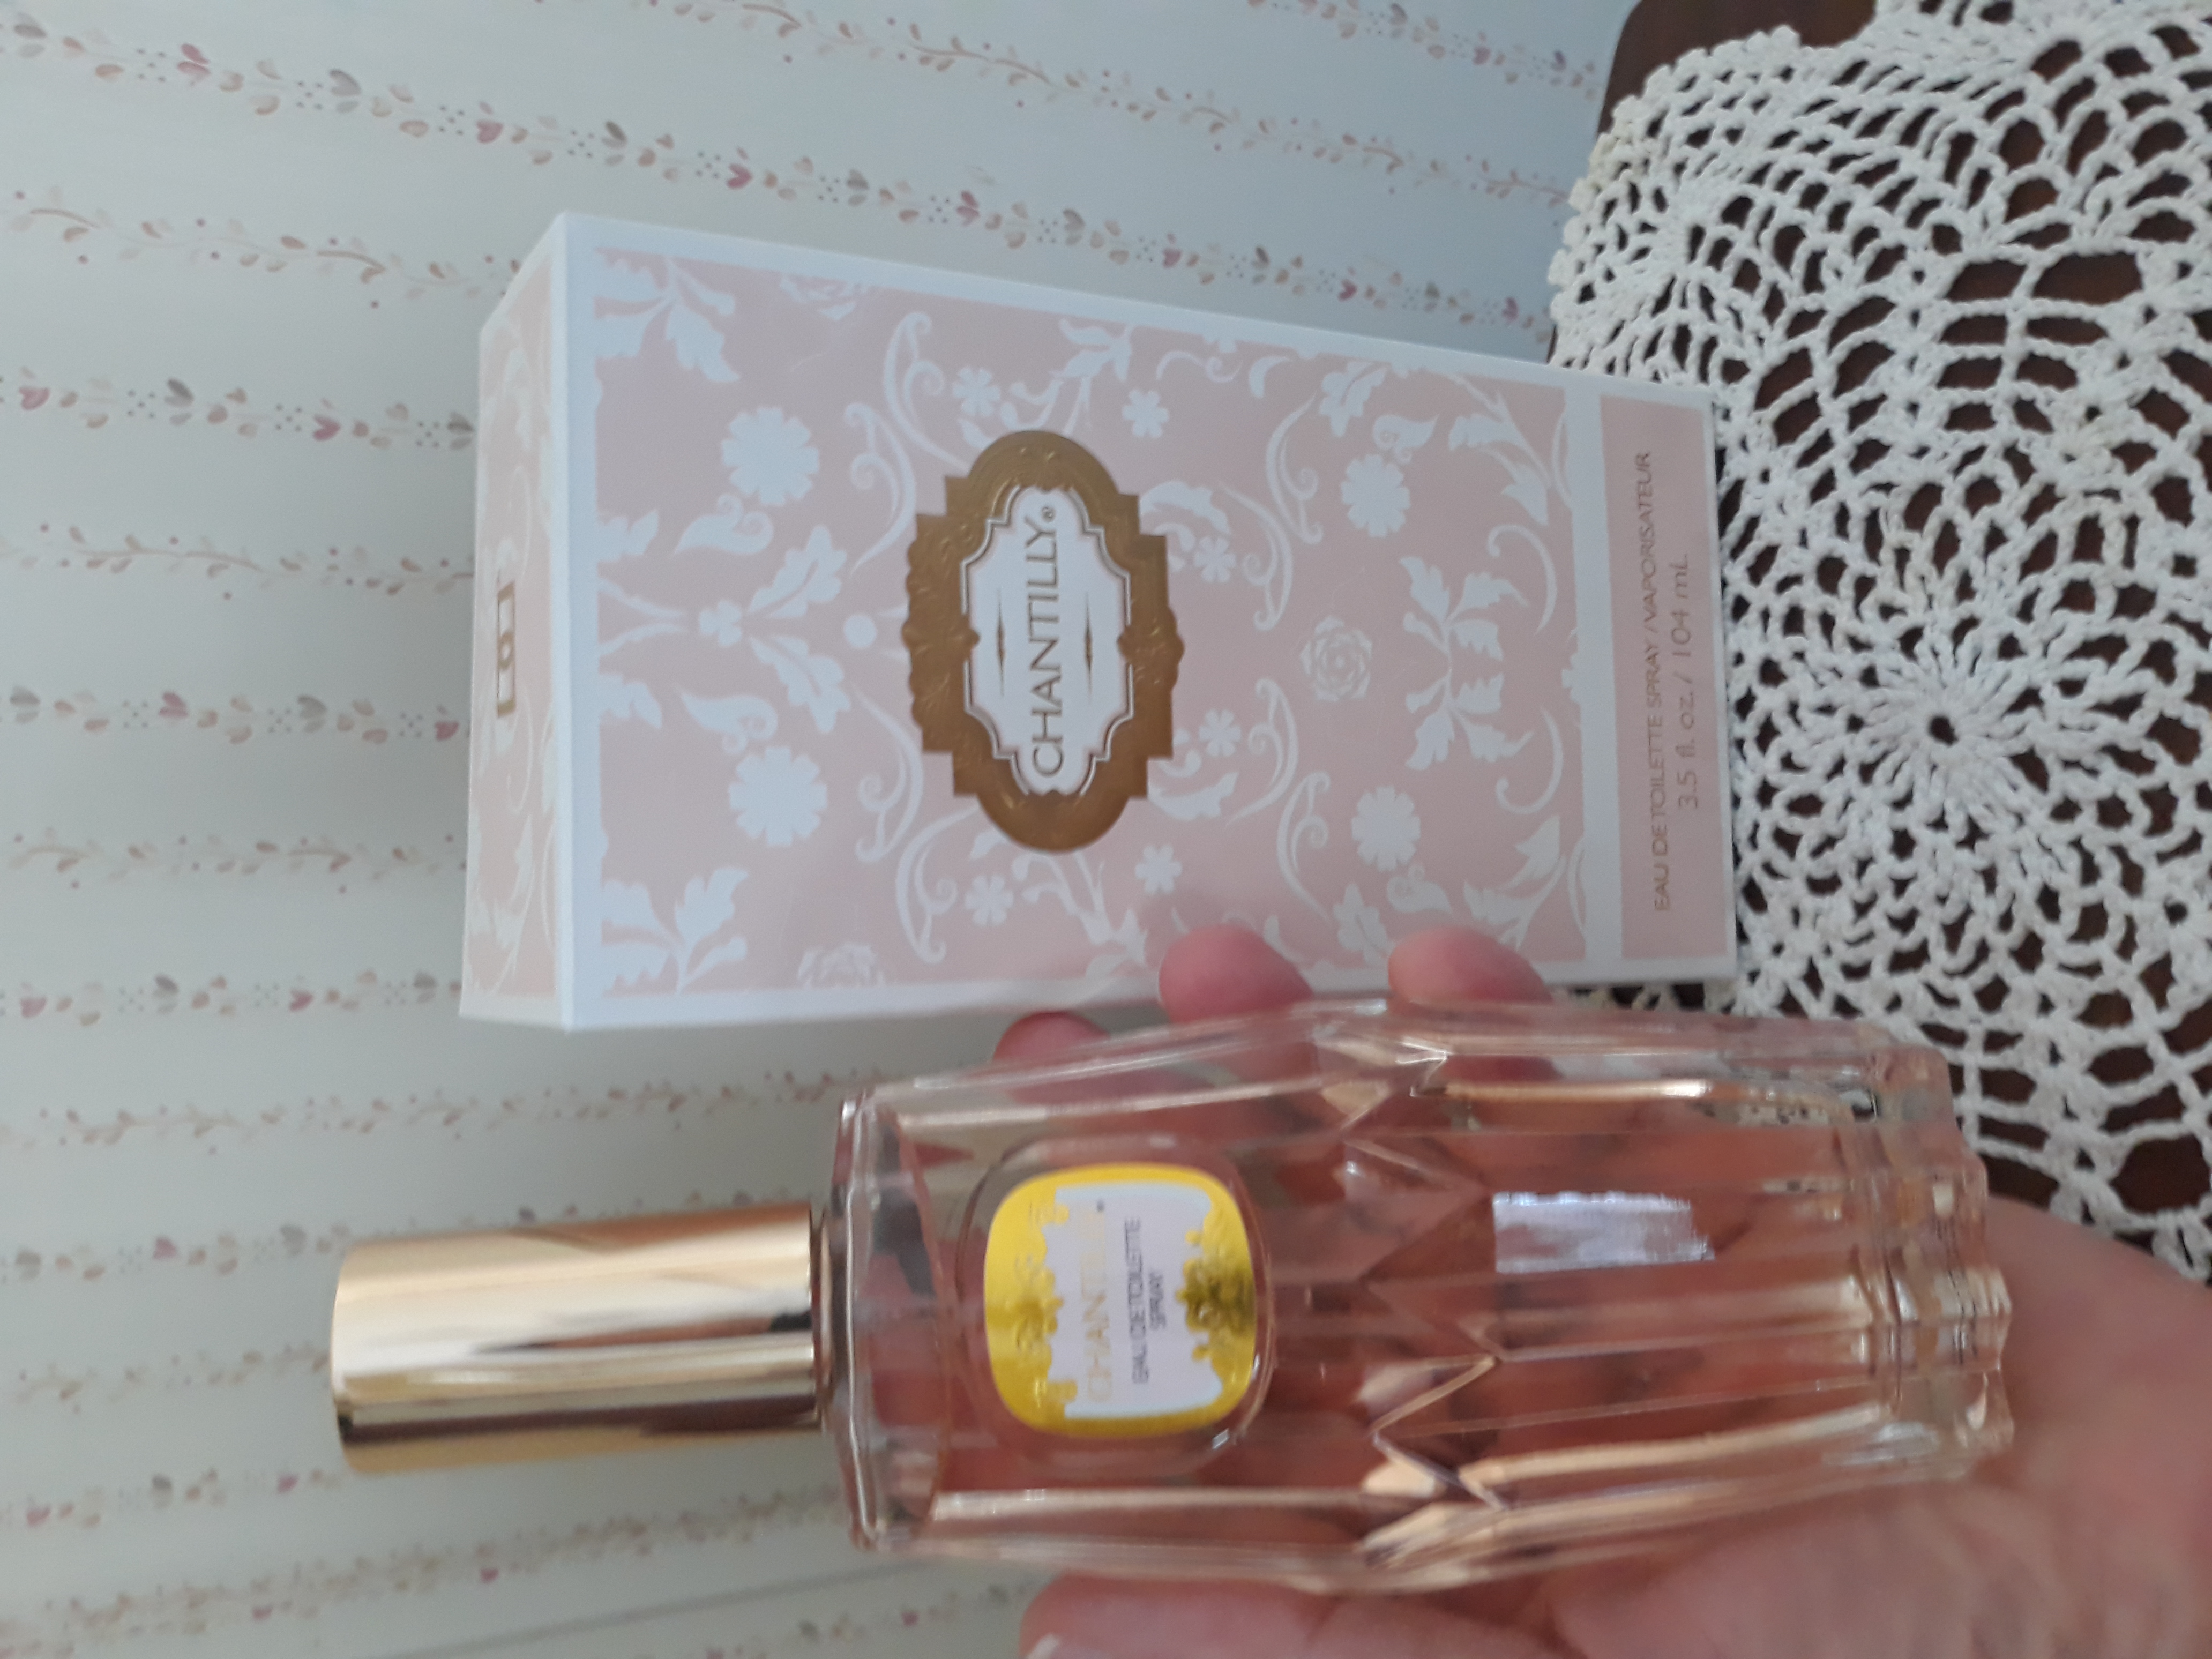 Perfume.com - 129,229 Reviews of | Sitejabber